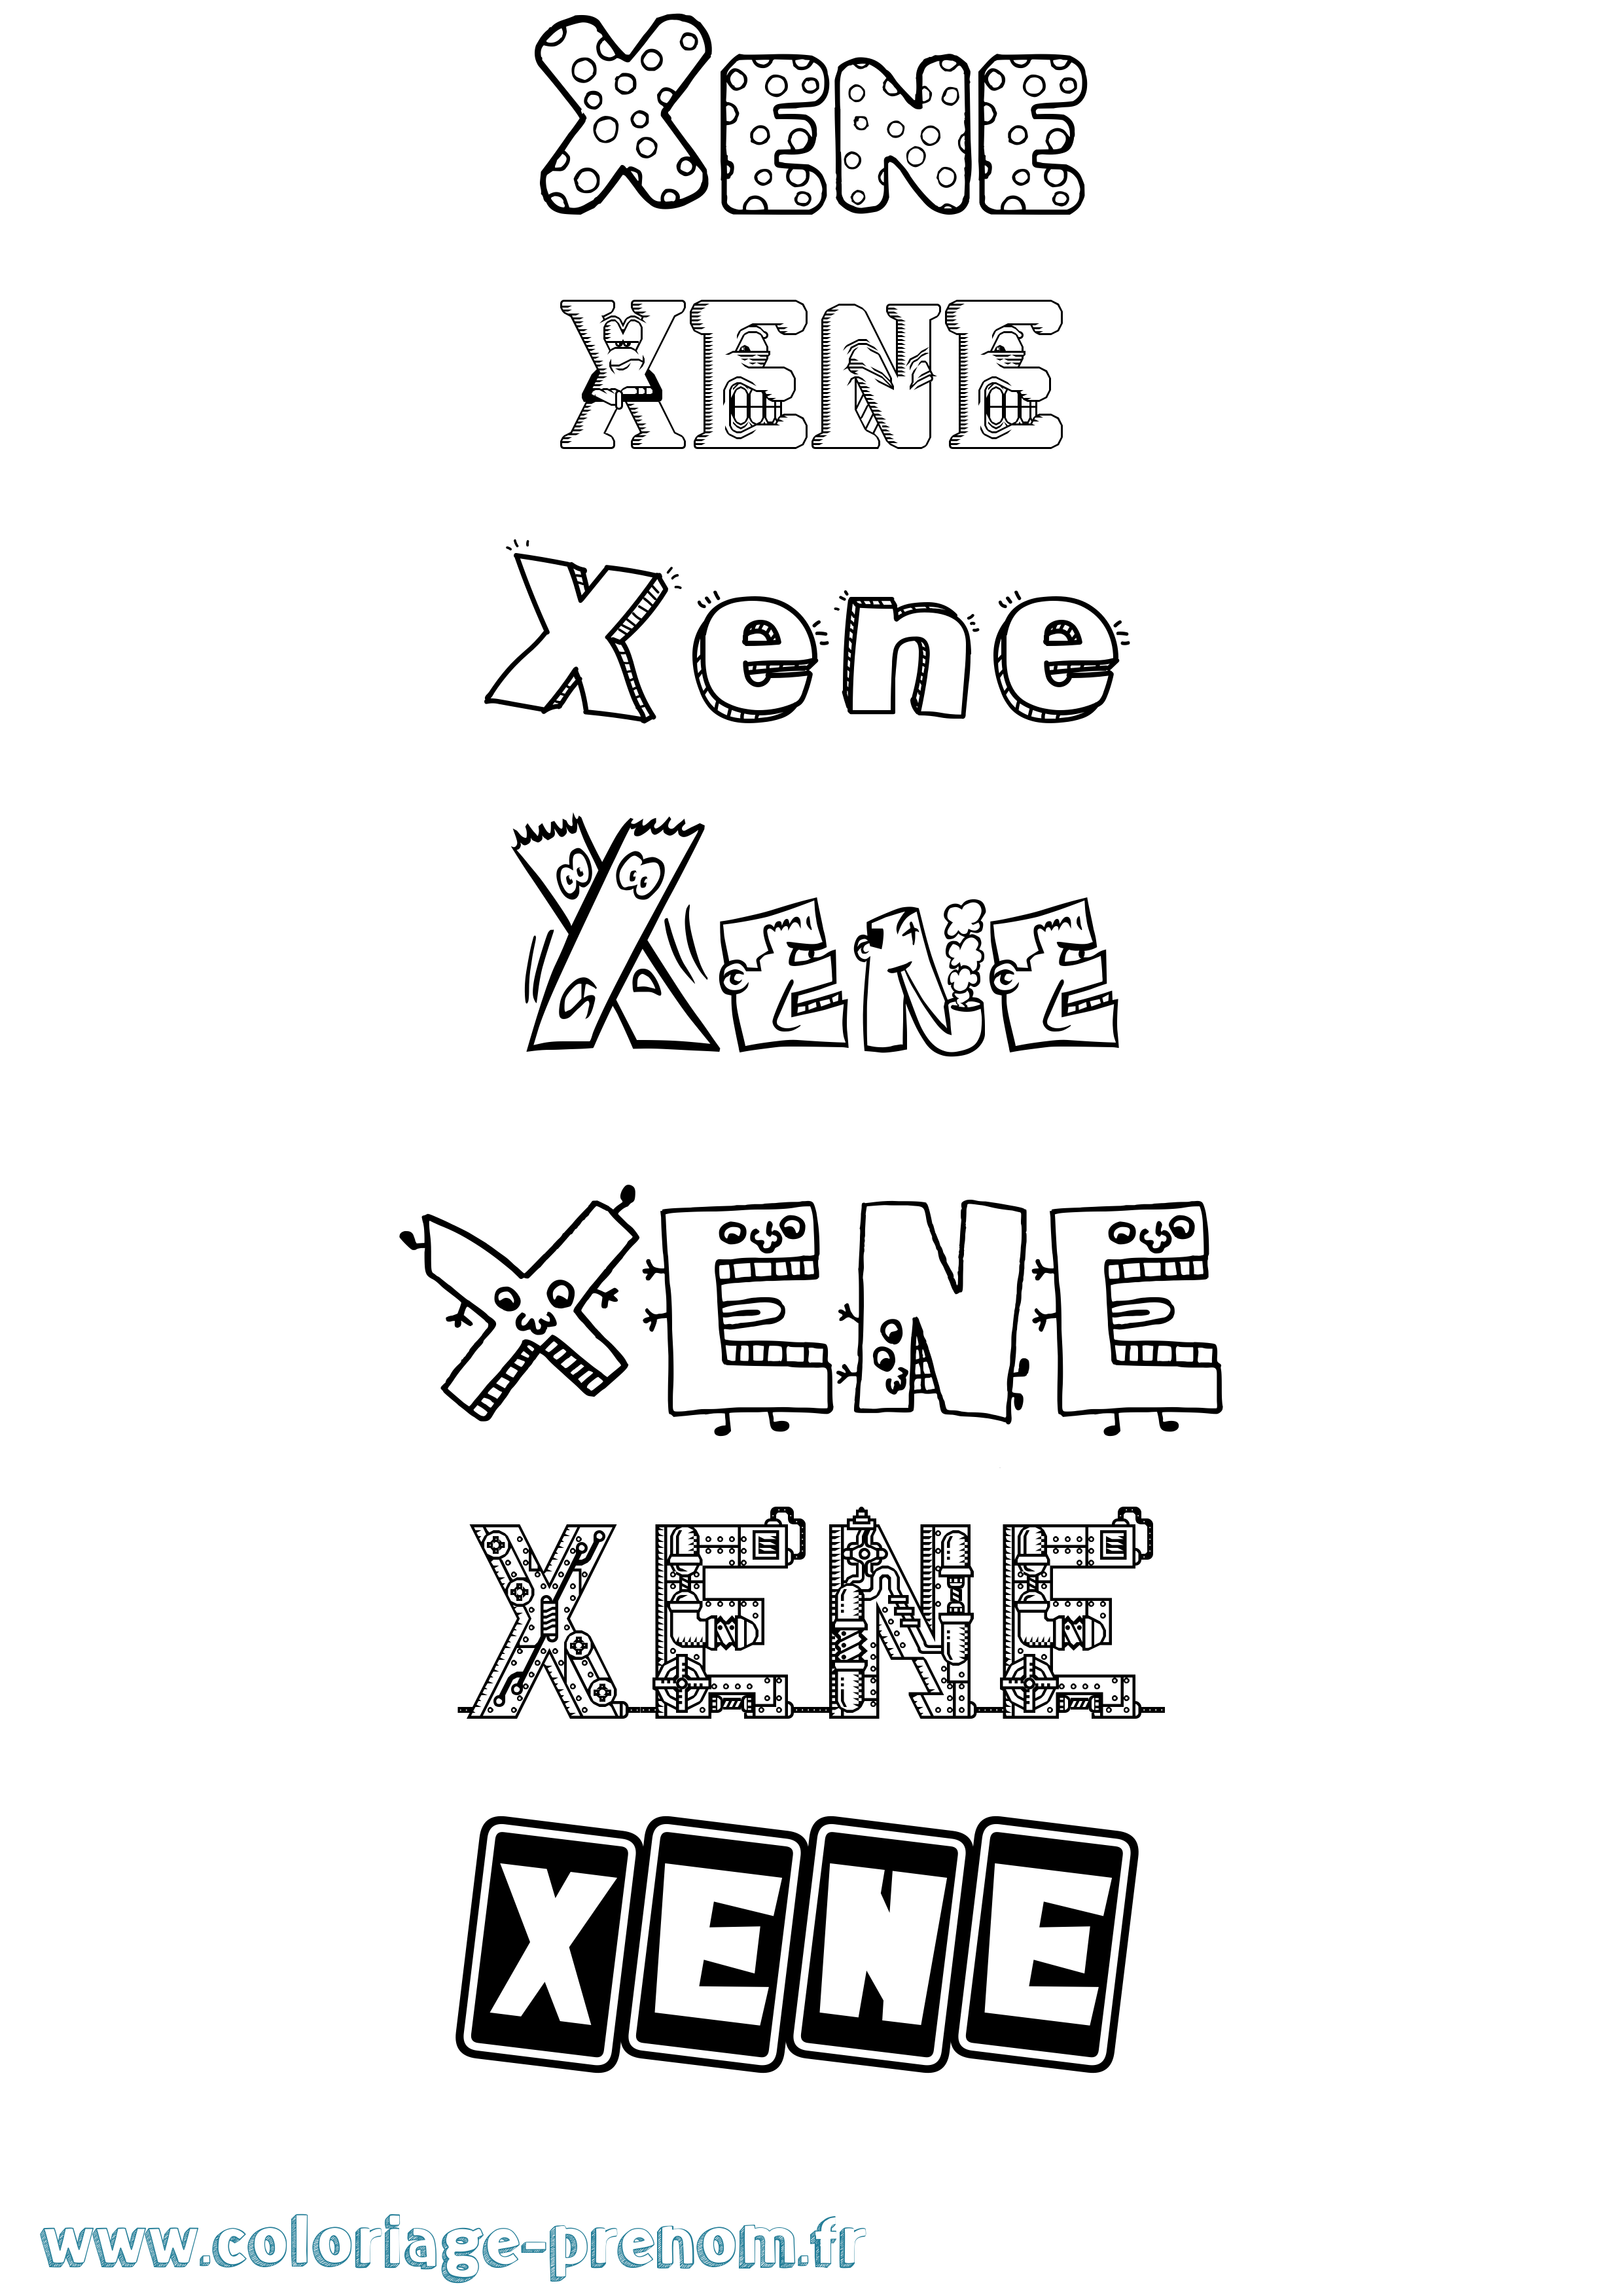 Coloriage prénom Xene Fun